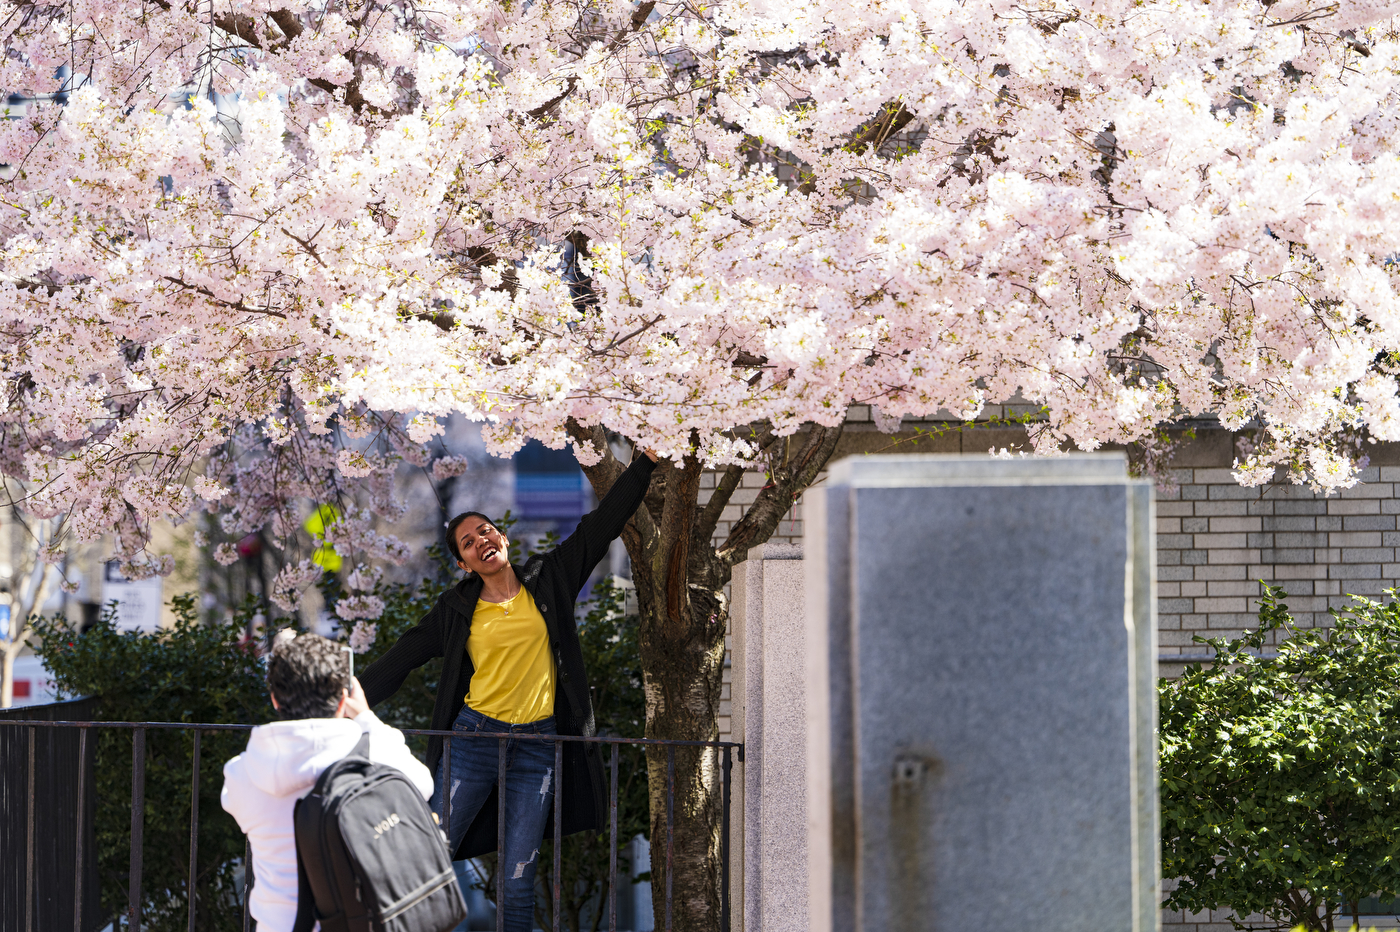 学生在树下装相片 满盛樱花